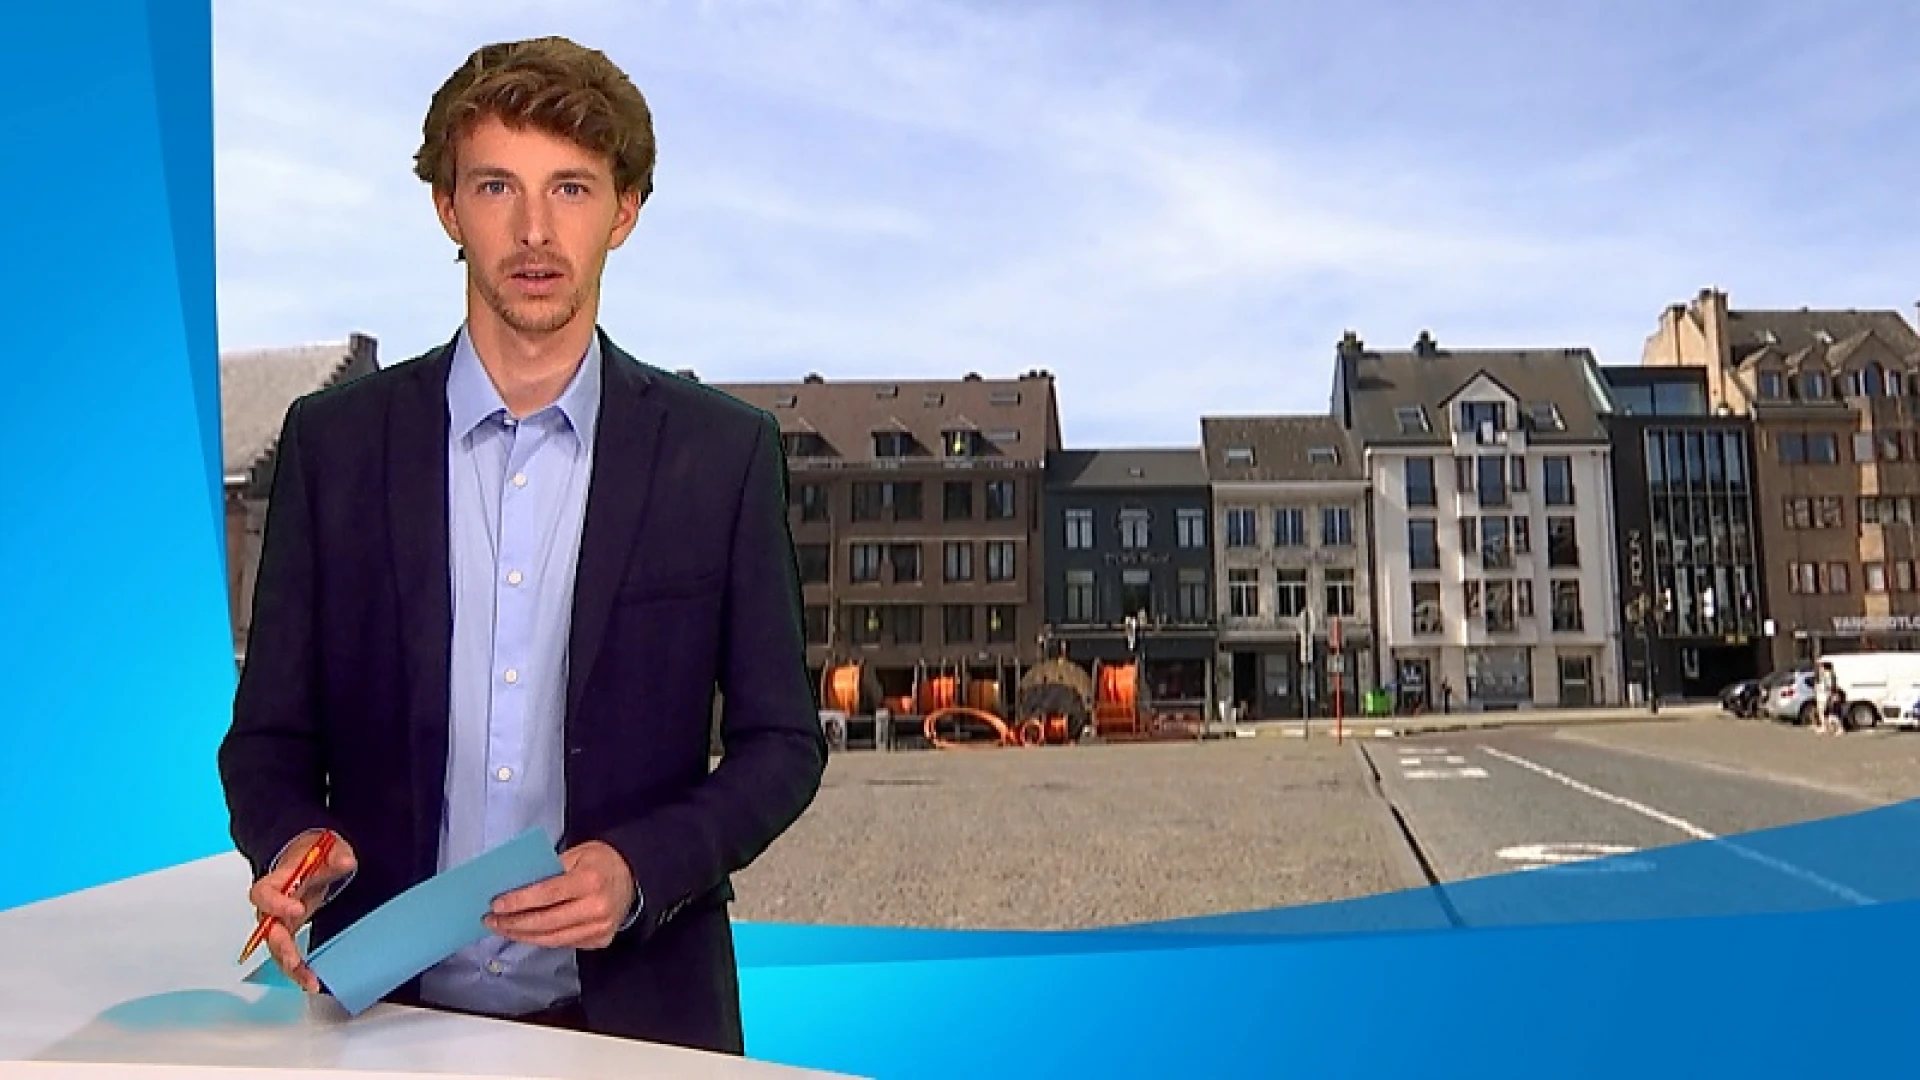 Vredegerecht Tienen verhuist eind volgend jaar terug naar historische plaats op Grote Markt